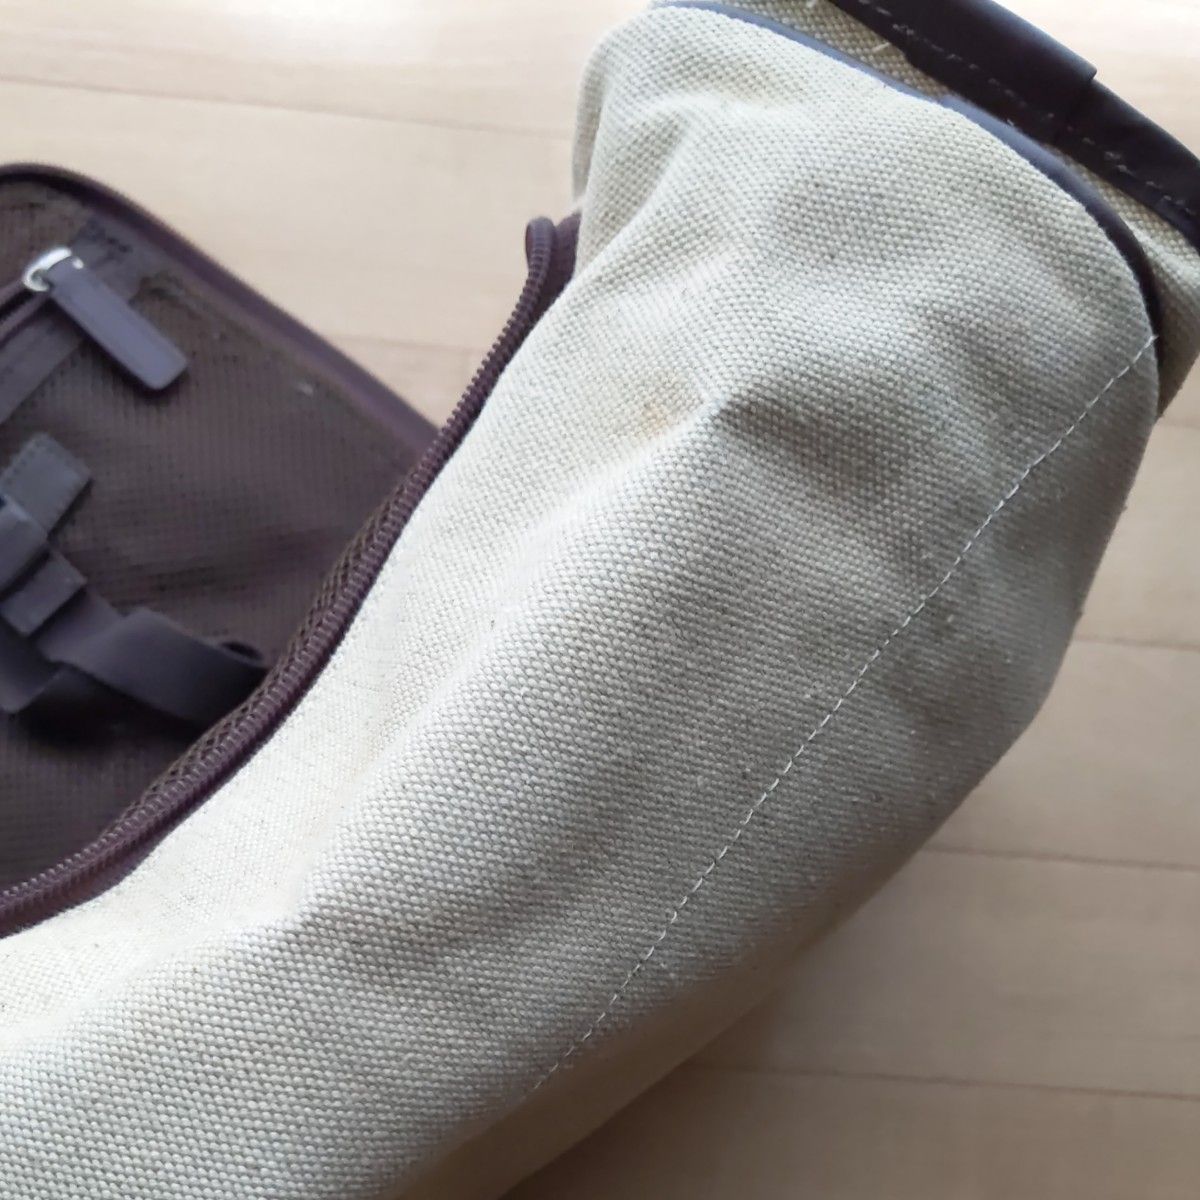 SUBARU非売品トラベルバッグ、ややハードなバッグ、ハンガー吊り下げ可能、サイドに取っ手あり